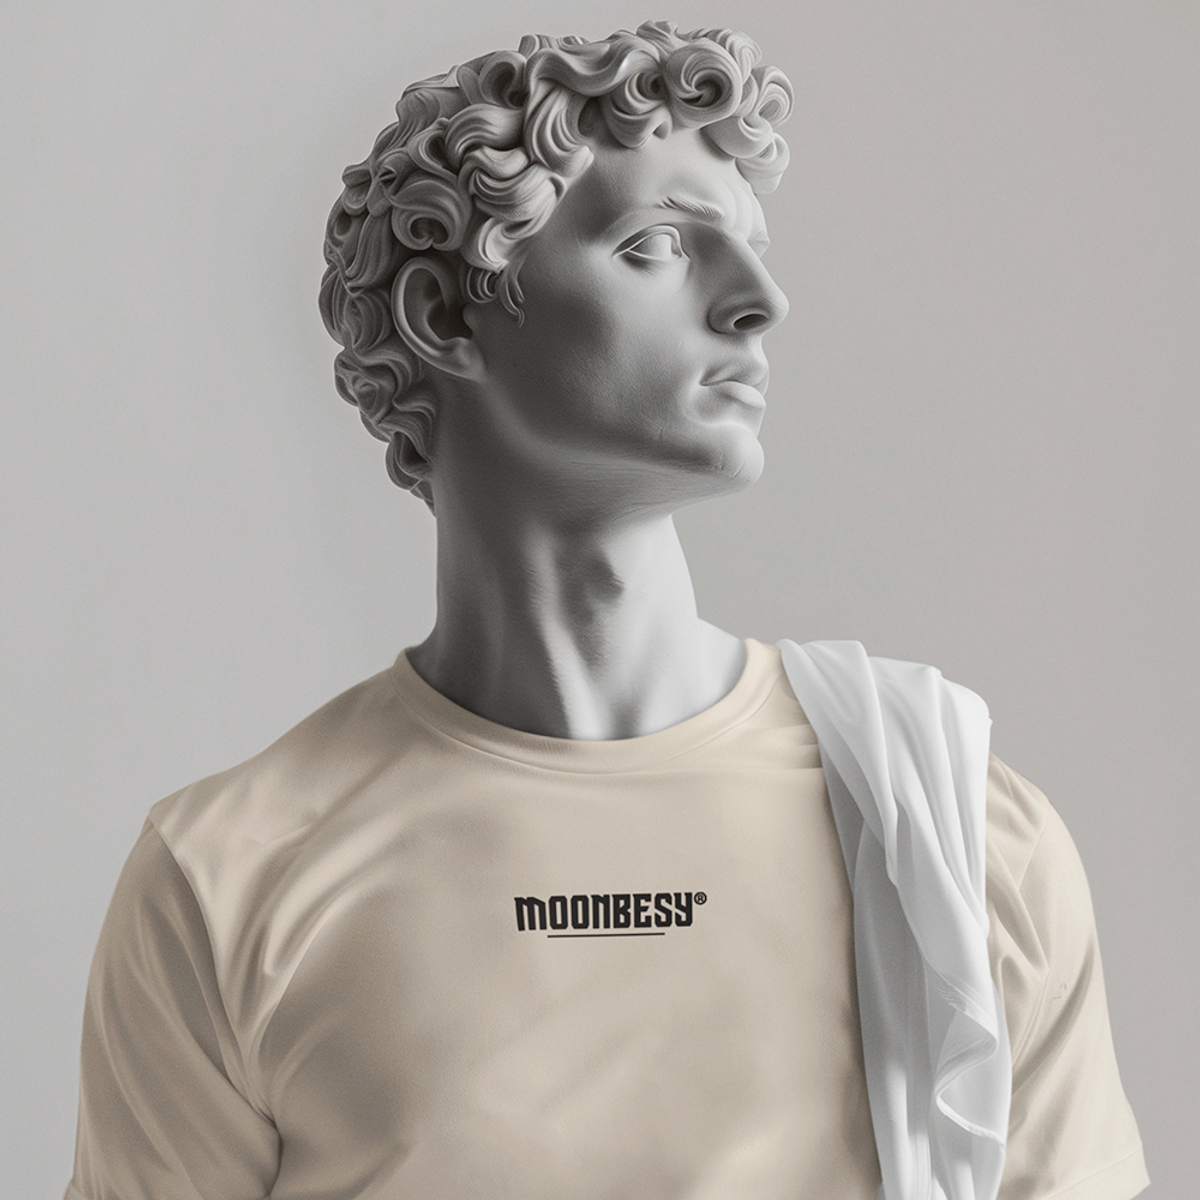 Nome do produto: Camisa Moonbesy